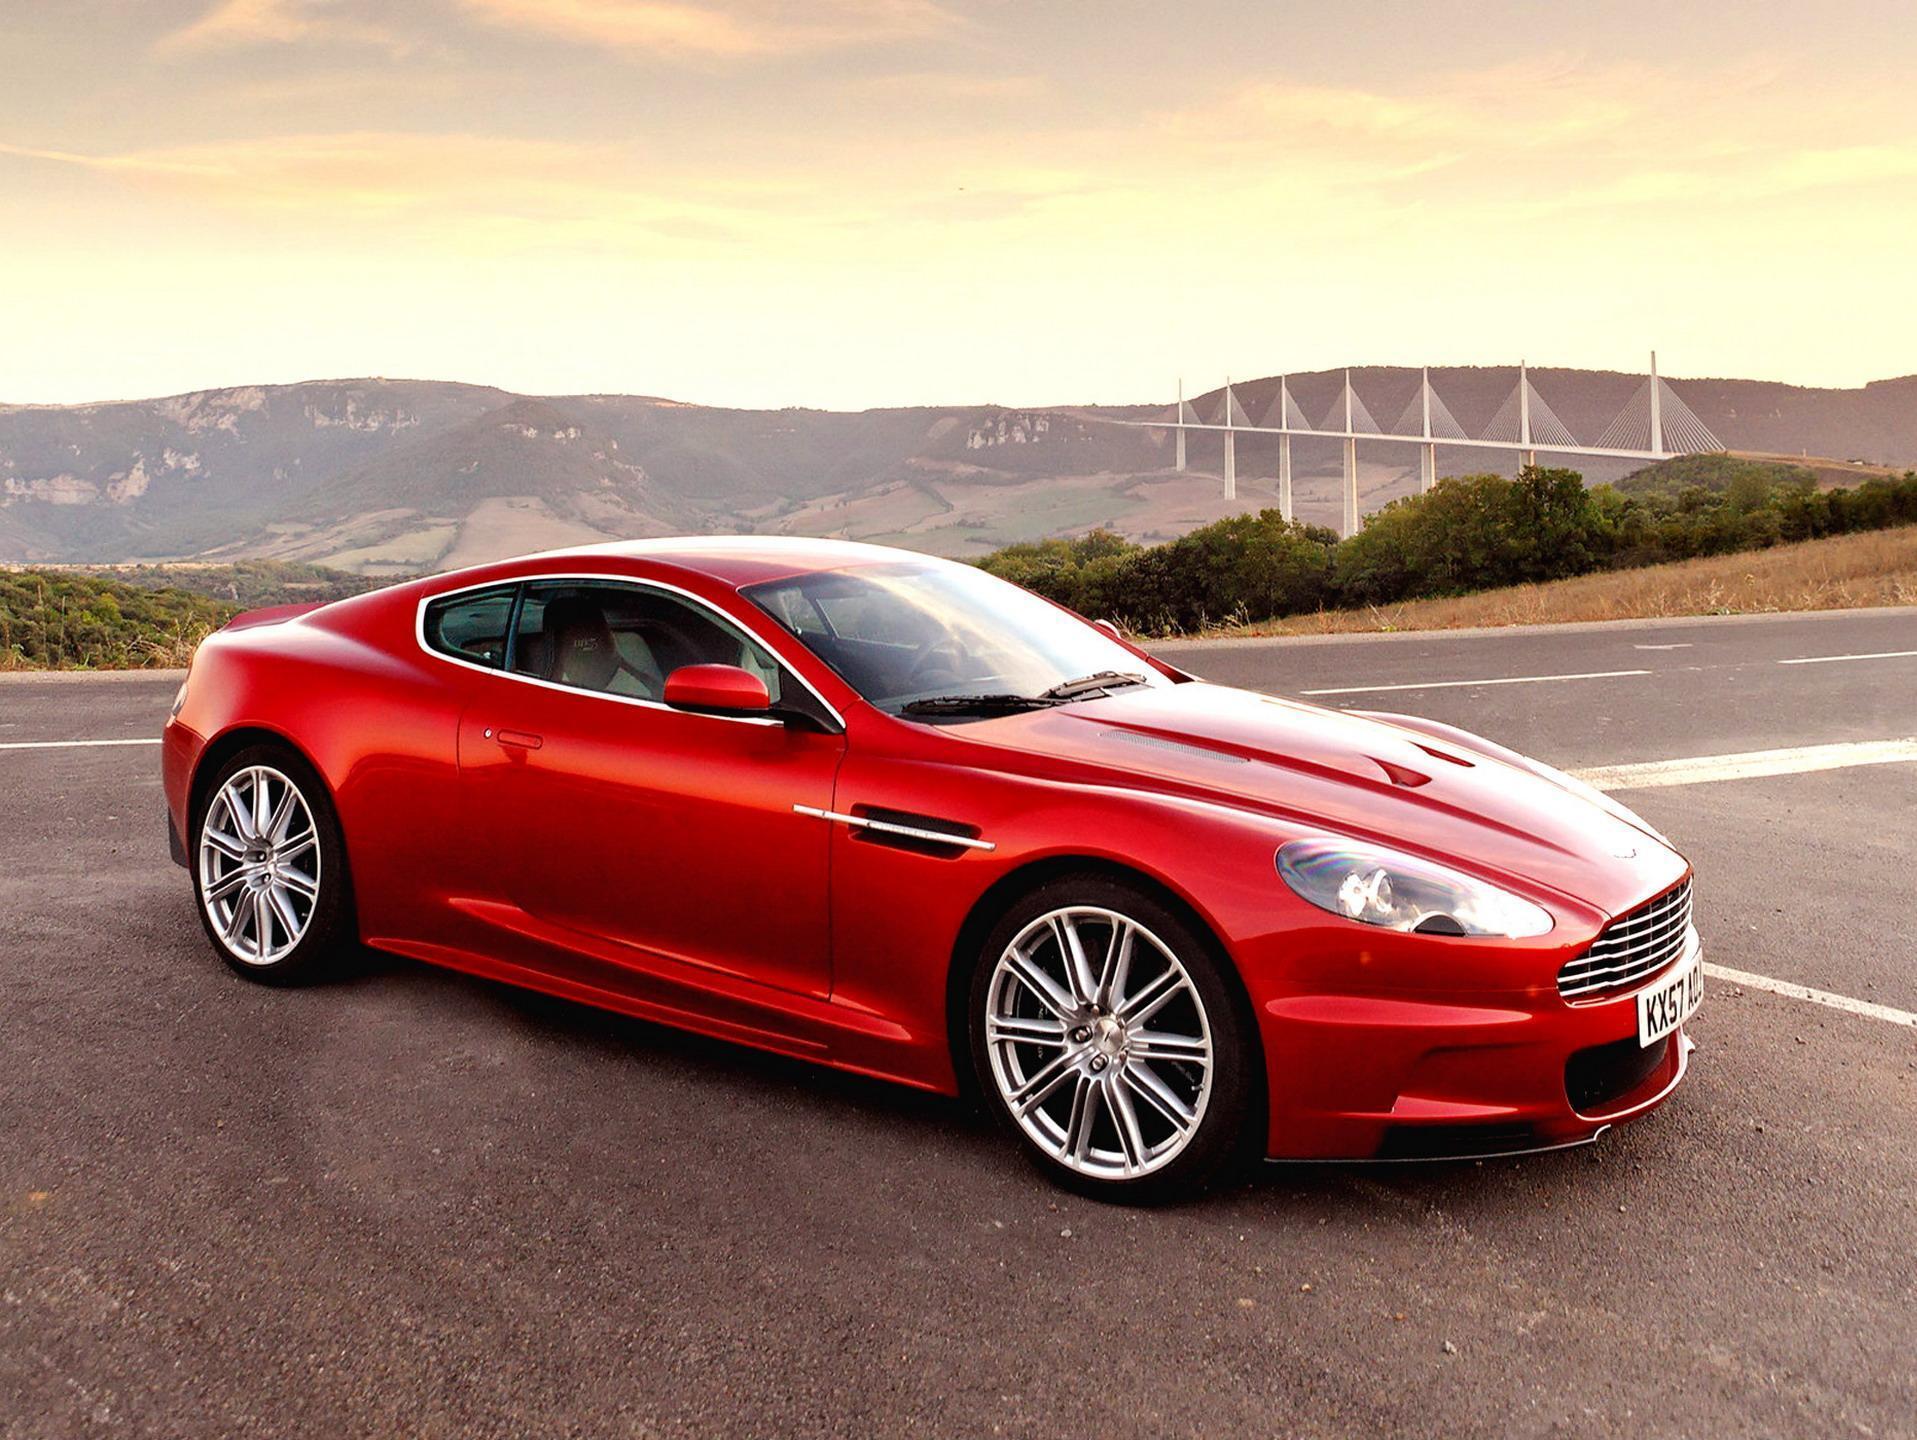 Aston martin red car free desktop background wallpaper image